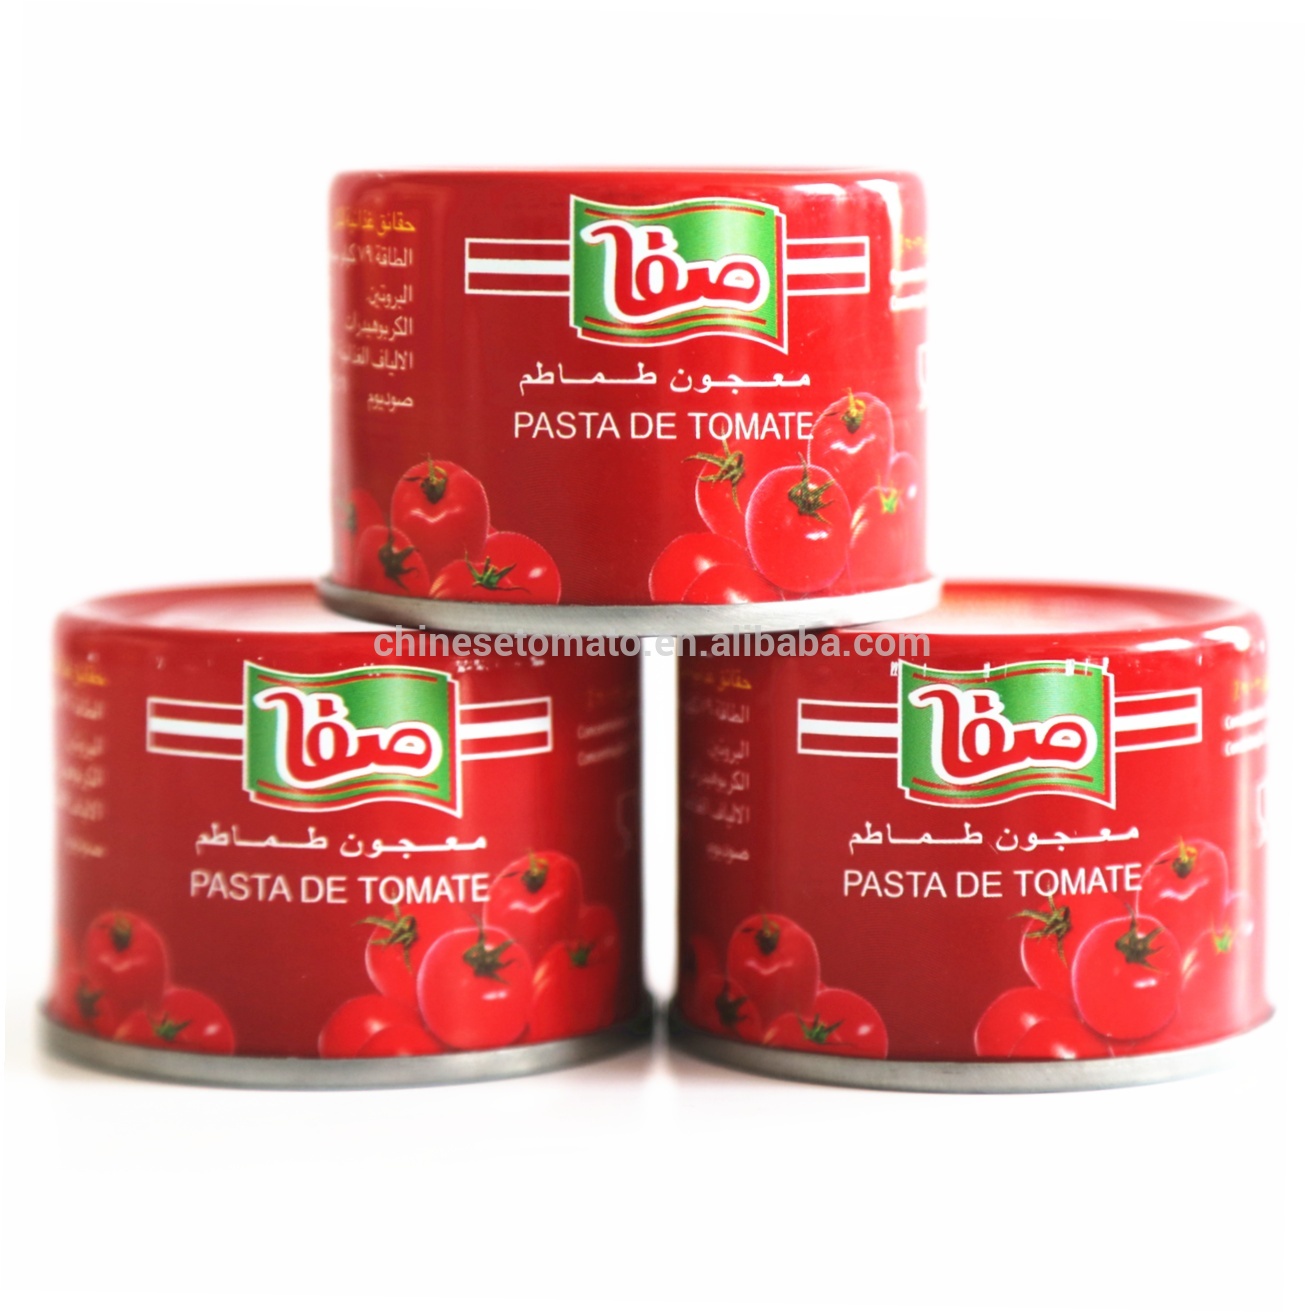 safa merk tomaat paste 2,2 kg yn blik iten